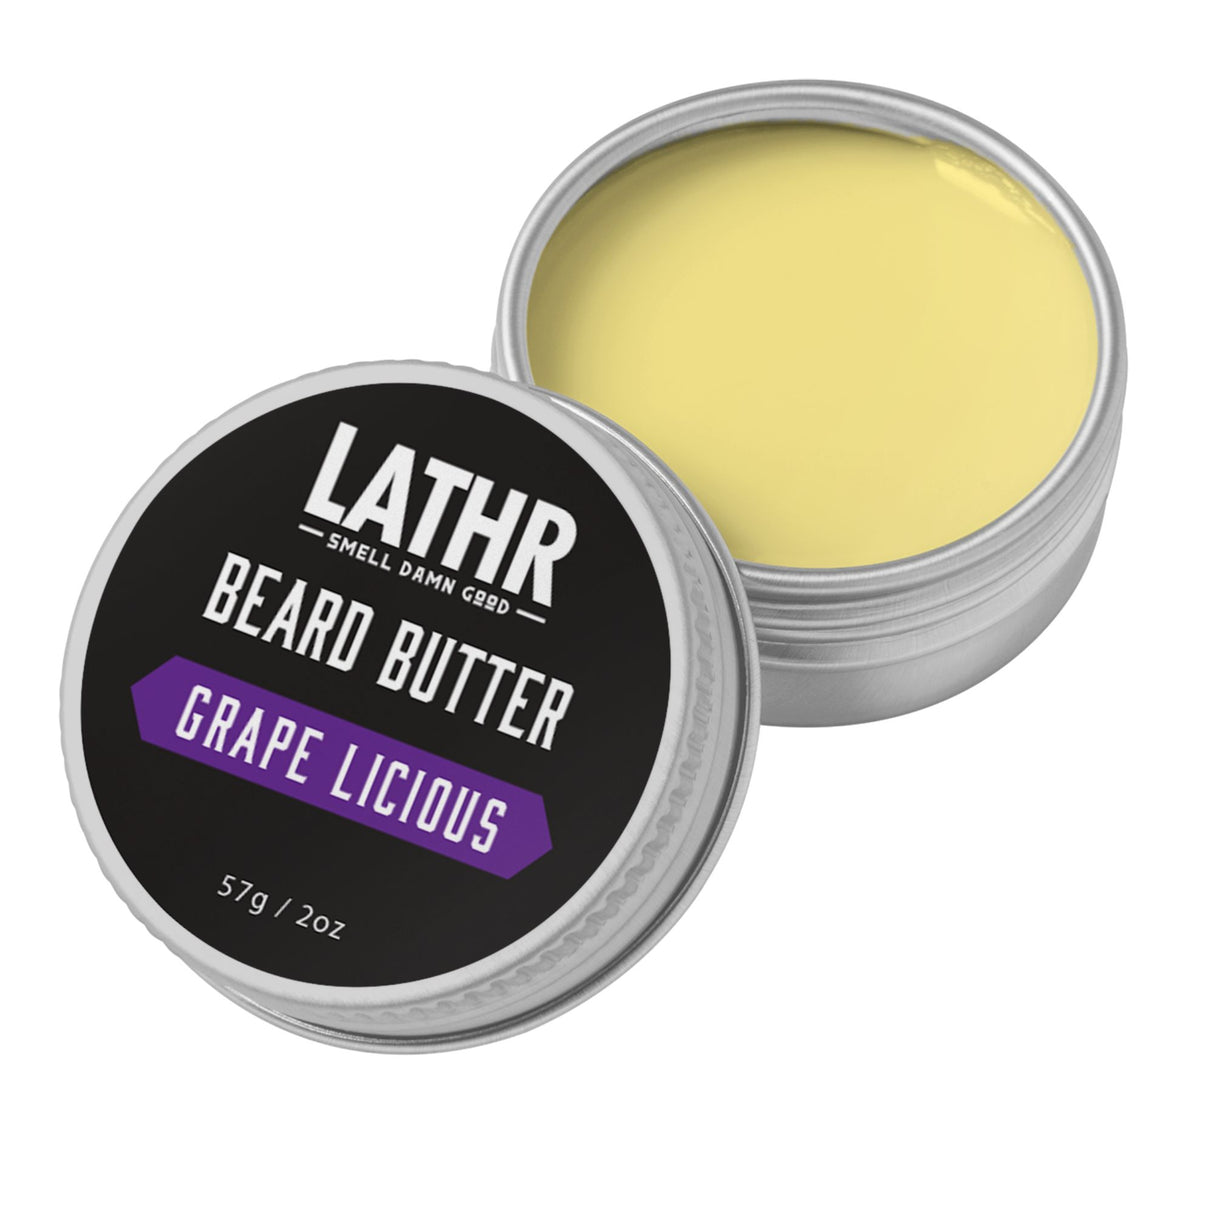 Beard Butter - Grape Licious